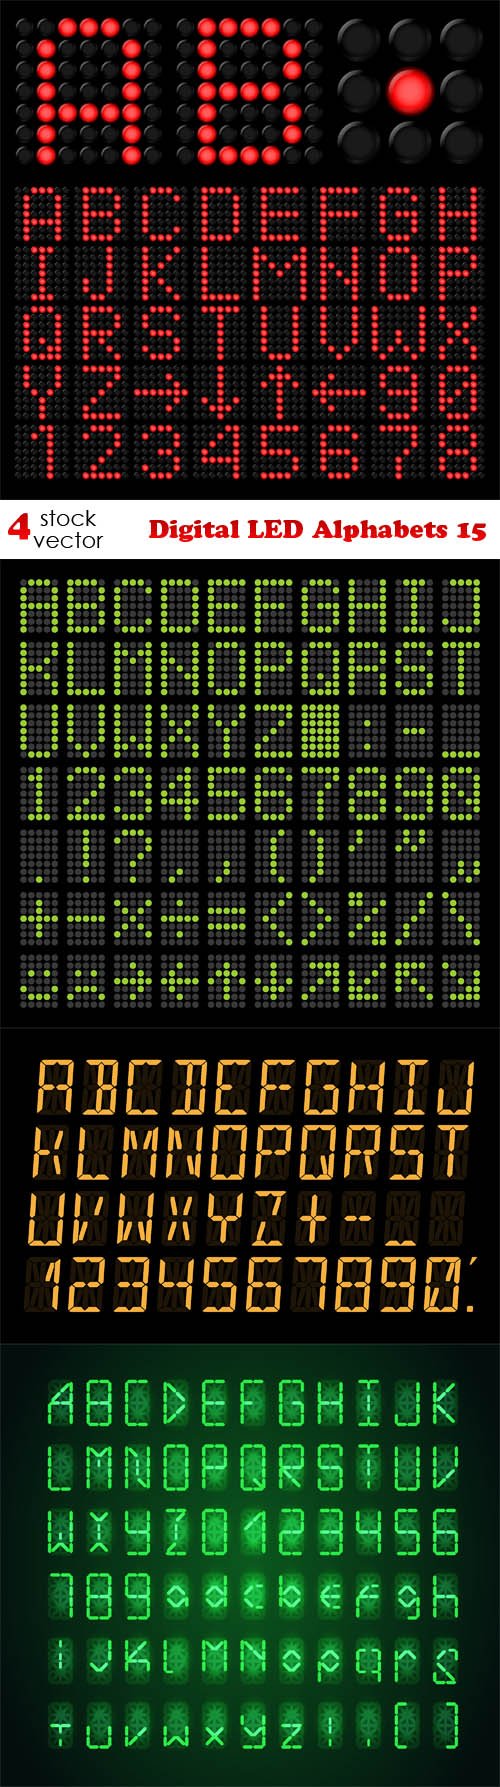 Vectors - Digital LED Alphabets 15